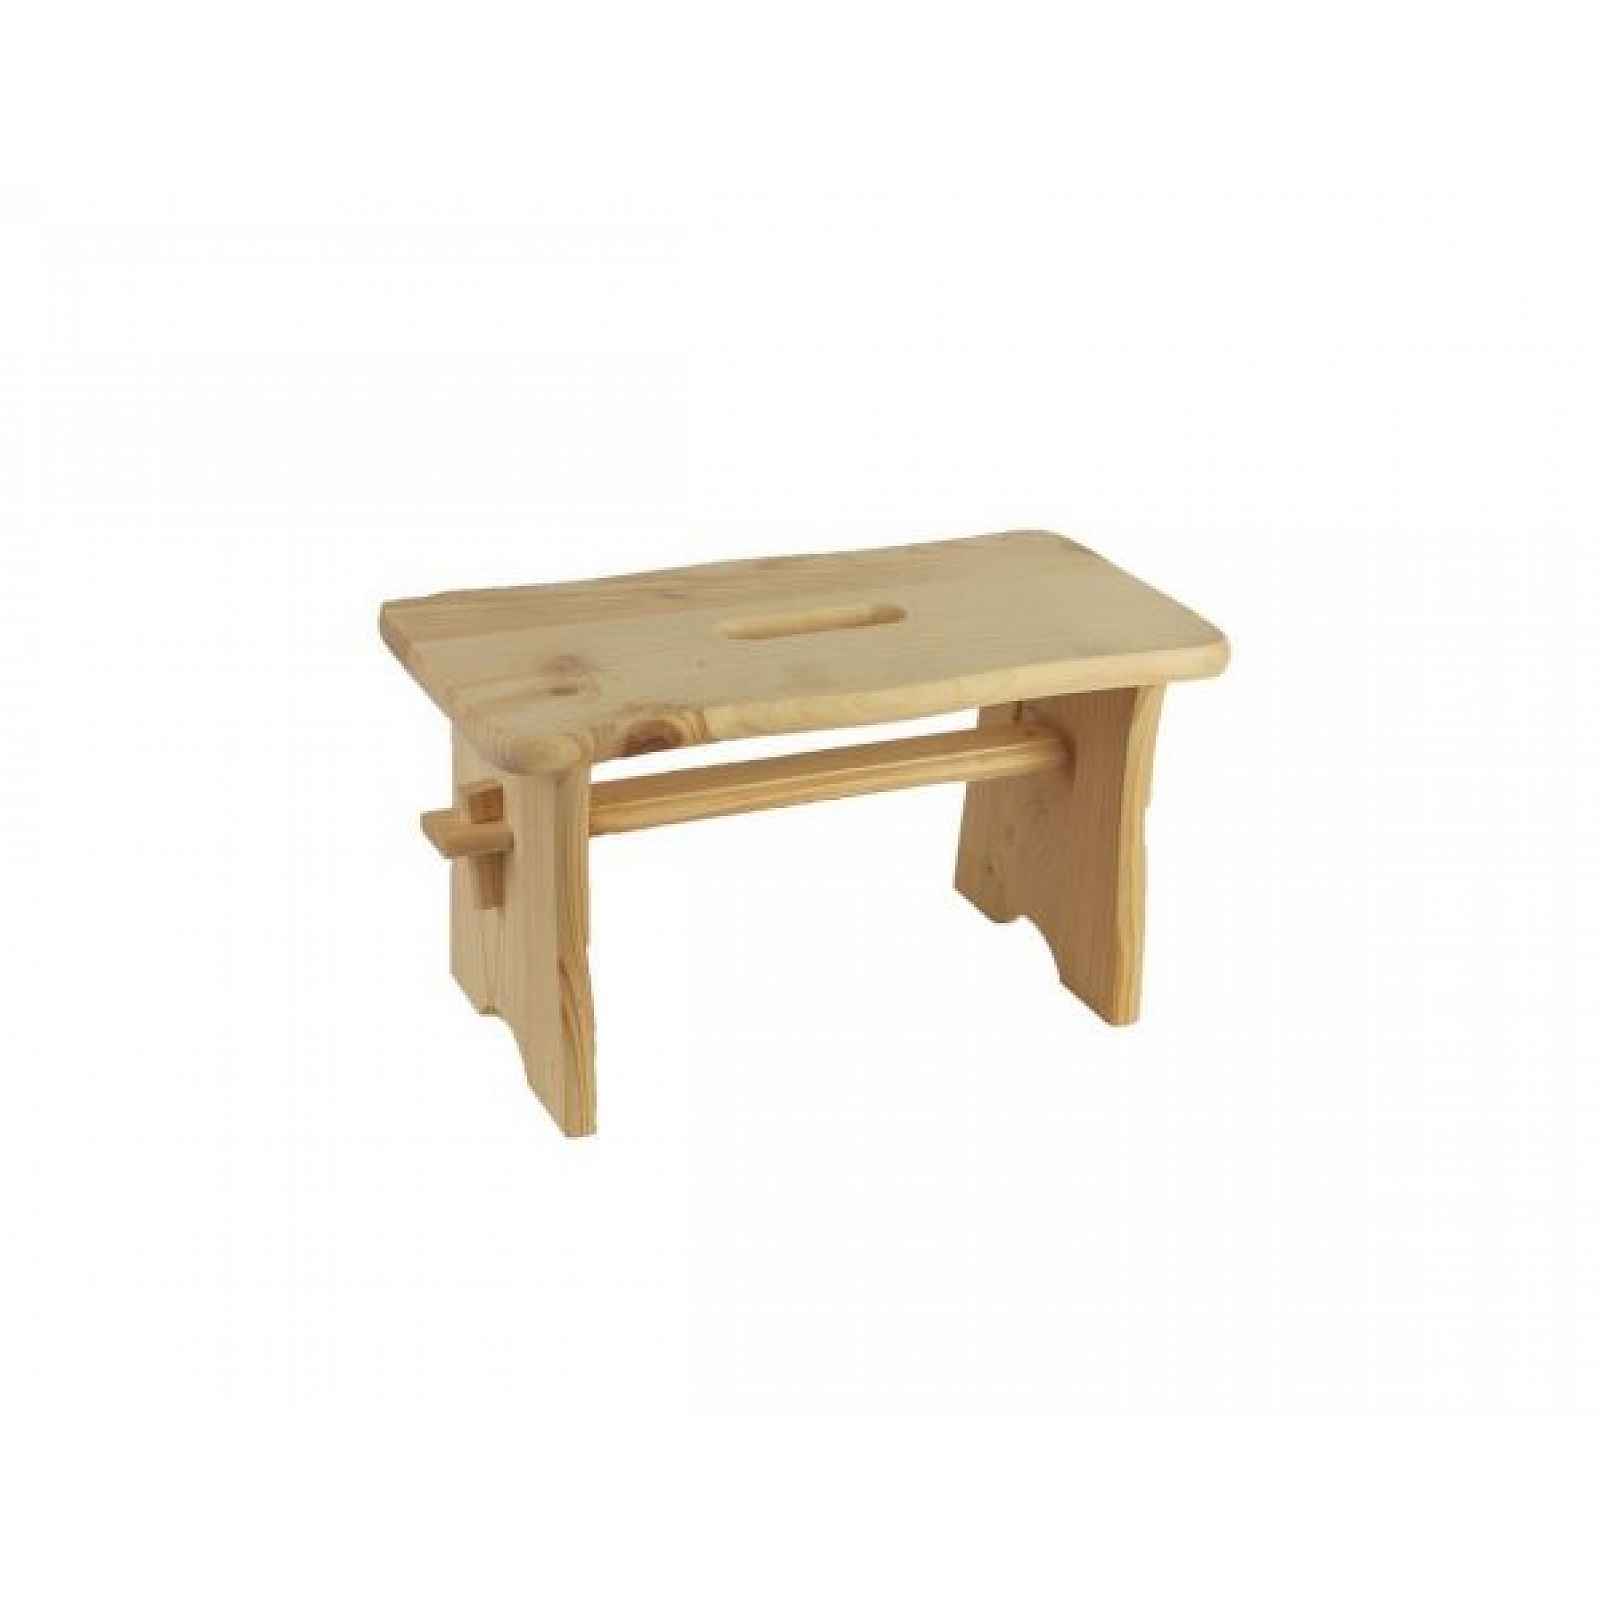 Dřevěná stolička, 097013